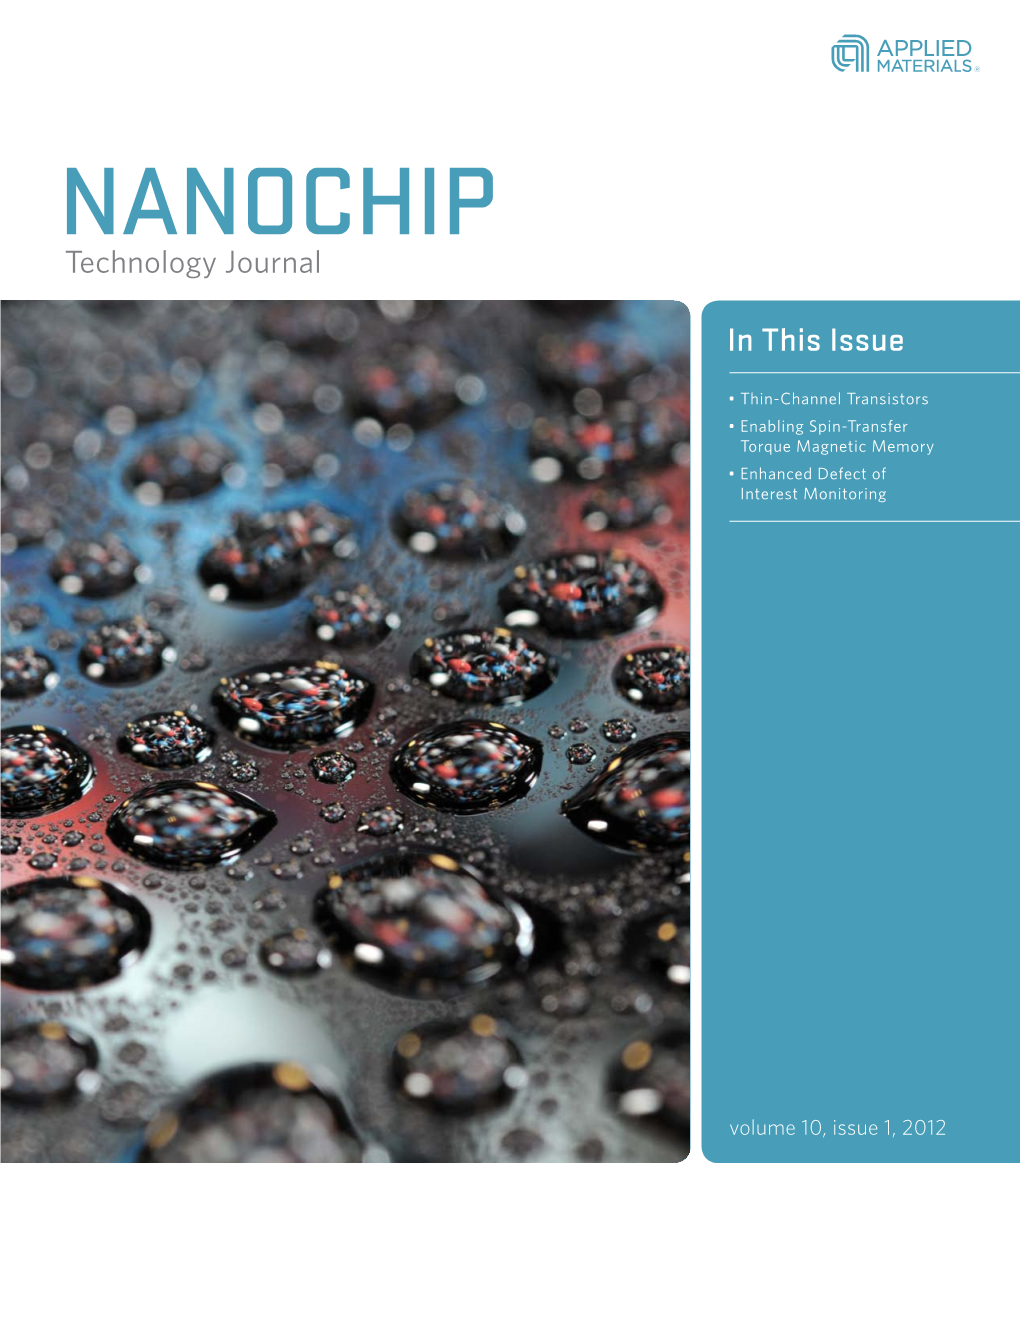 NANOCHIP Technology Journal